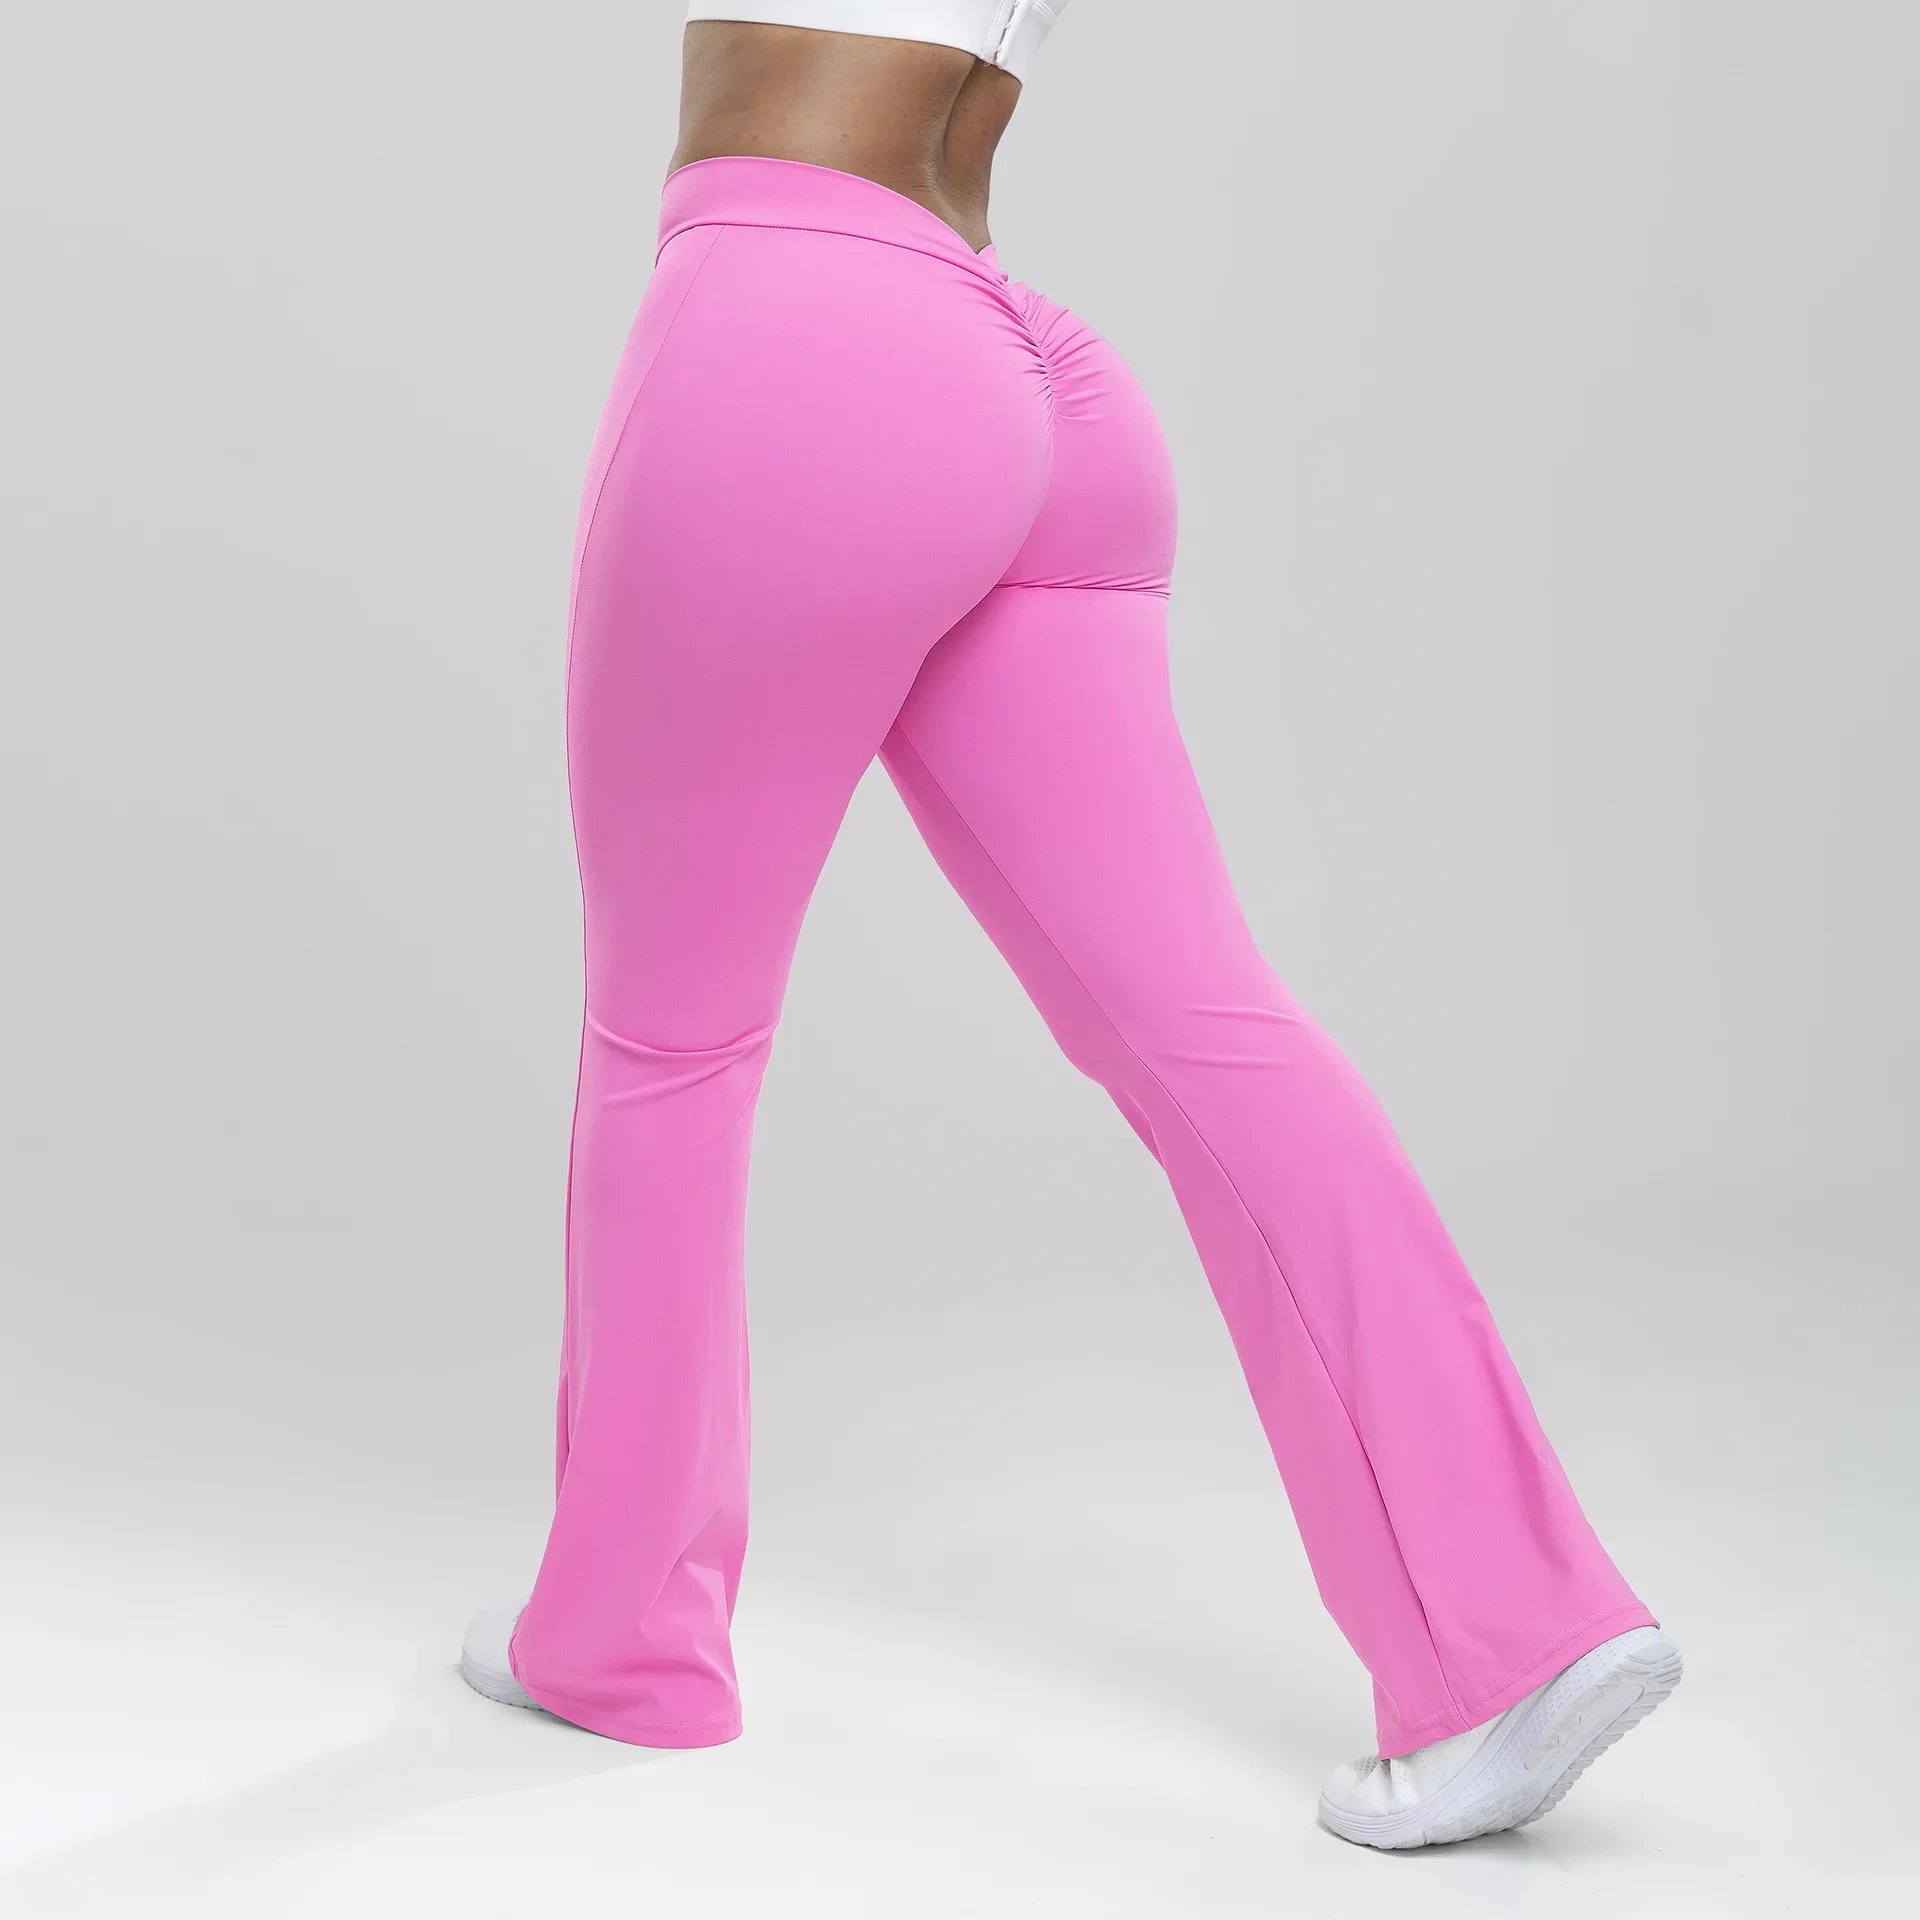 

Yoga Pants Flare Leg Low Waist Exercise Training Running Flare Bottom Push Up Fitness Sport Scrunch Leggings for Gym Pants Women